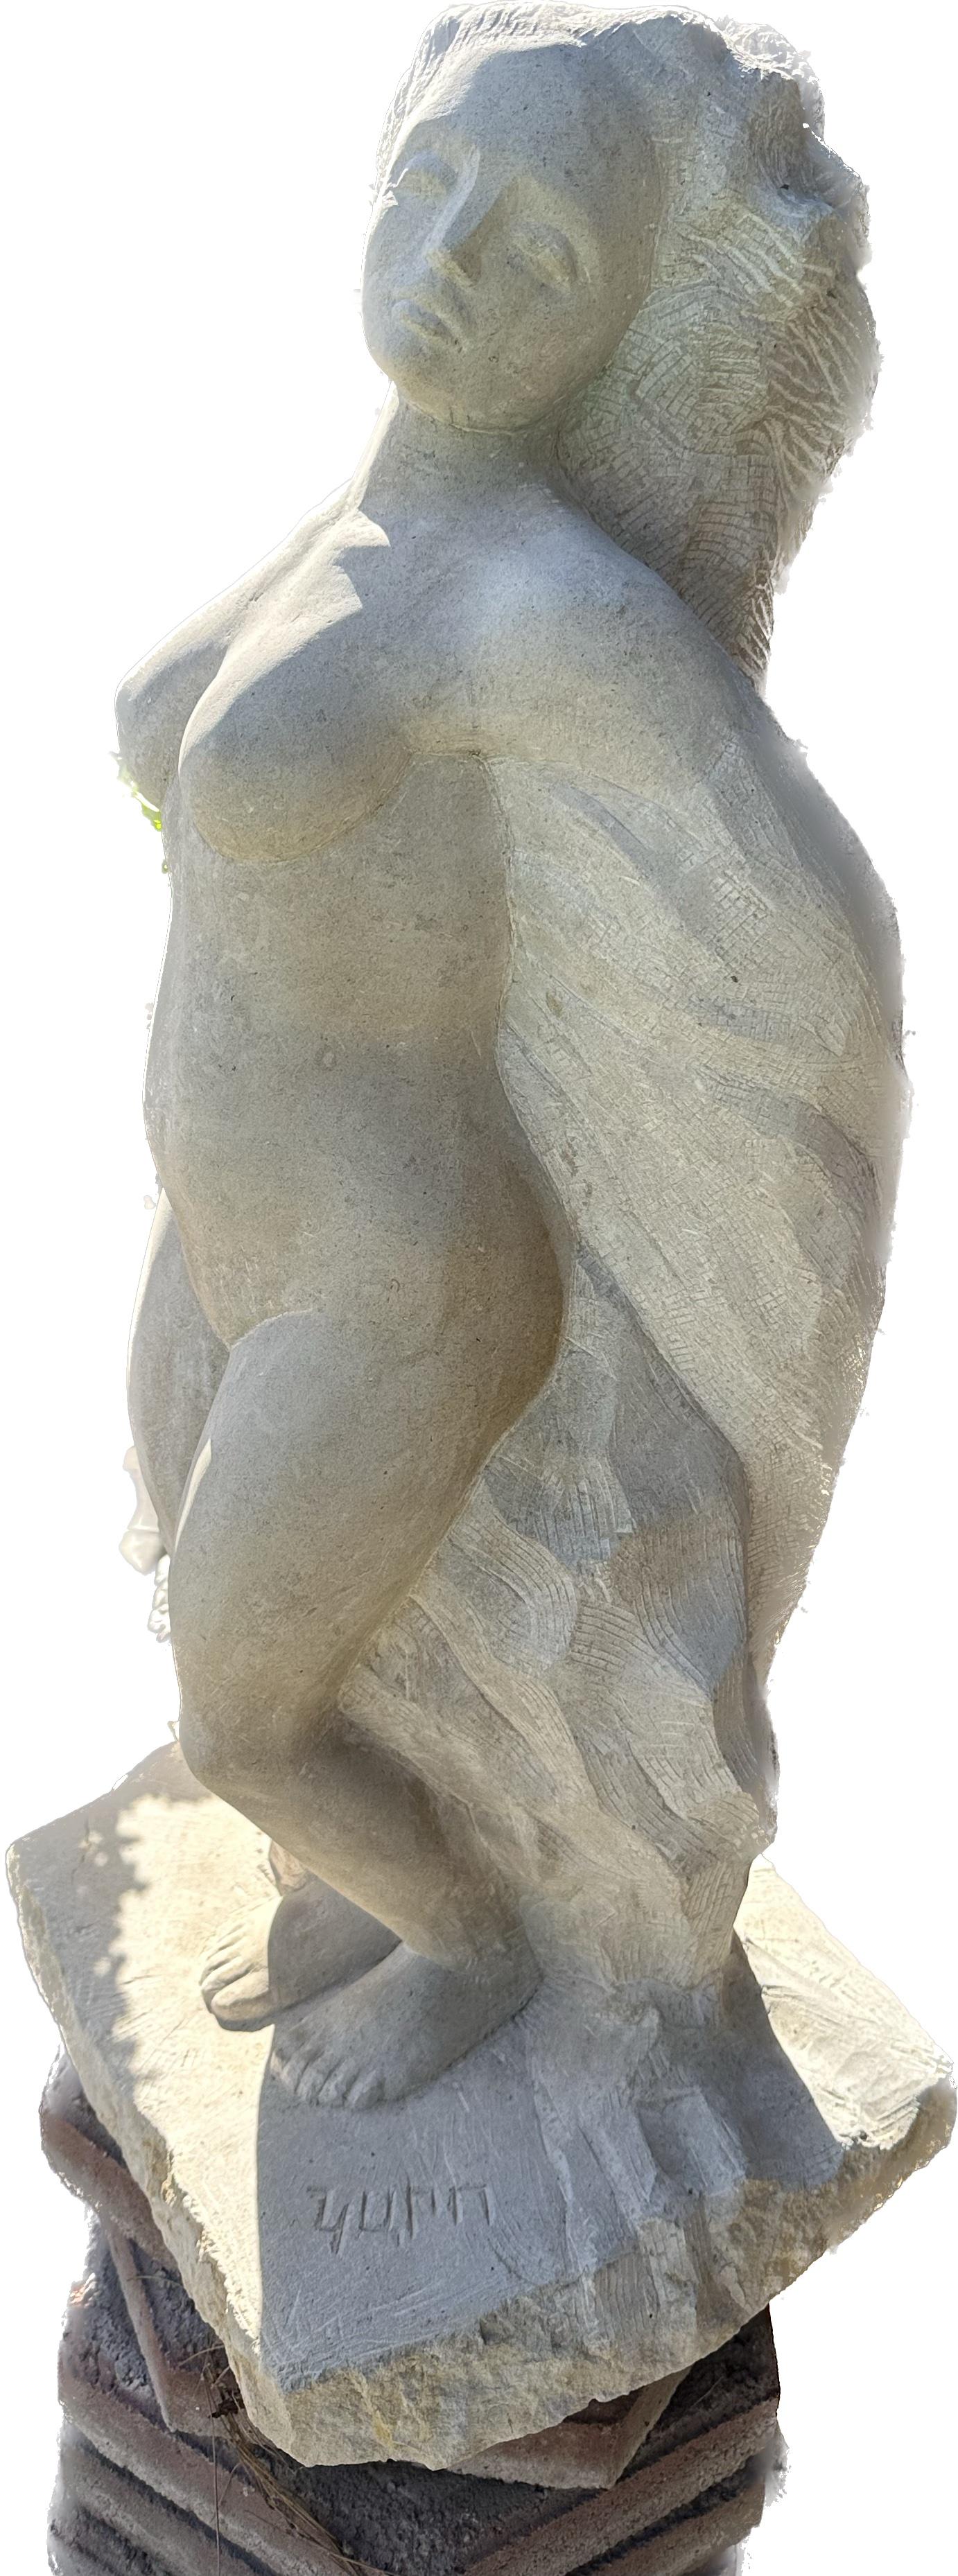 Femme nue, sculpture, pierre faite à la main par Garo - Impressionnisme Sculpture par Karapet Balakeseryan  (Garo)